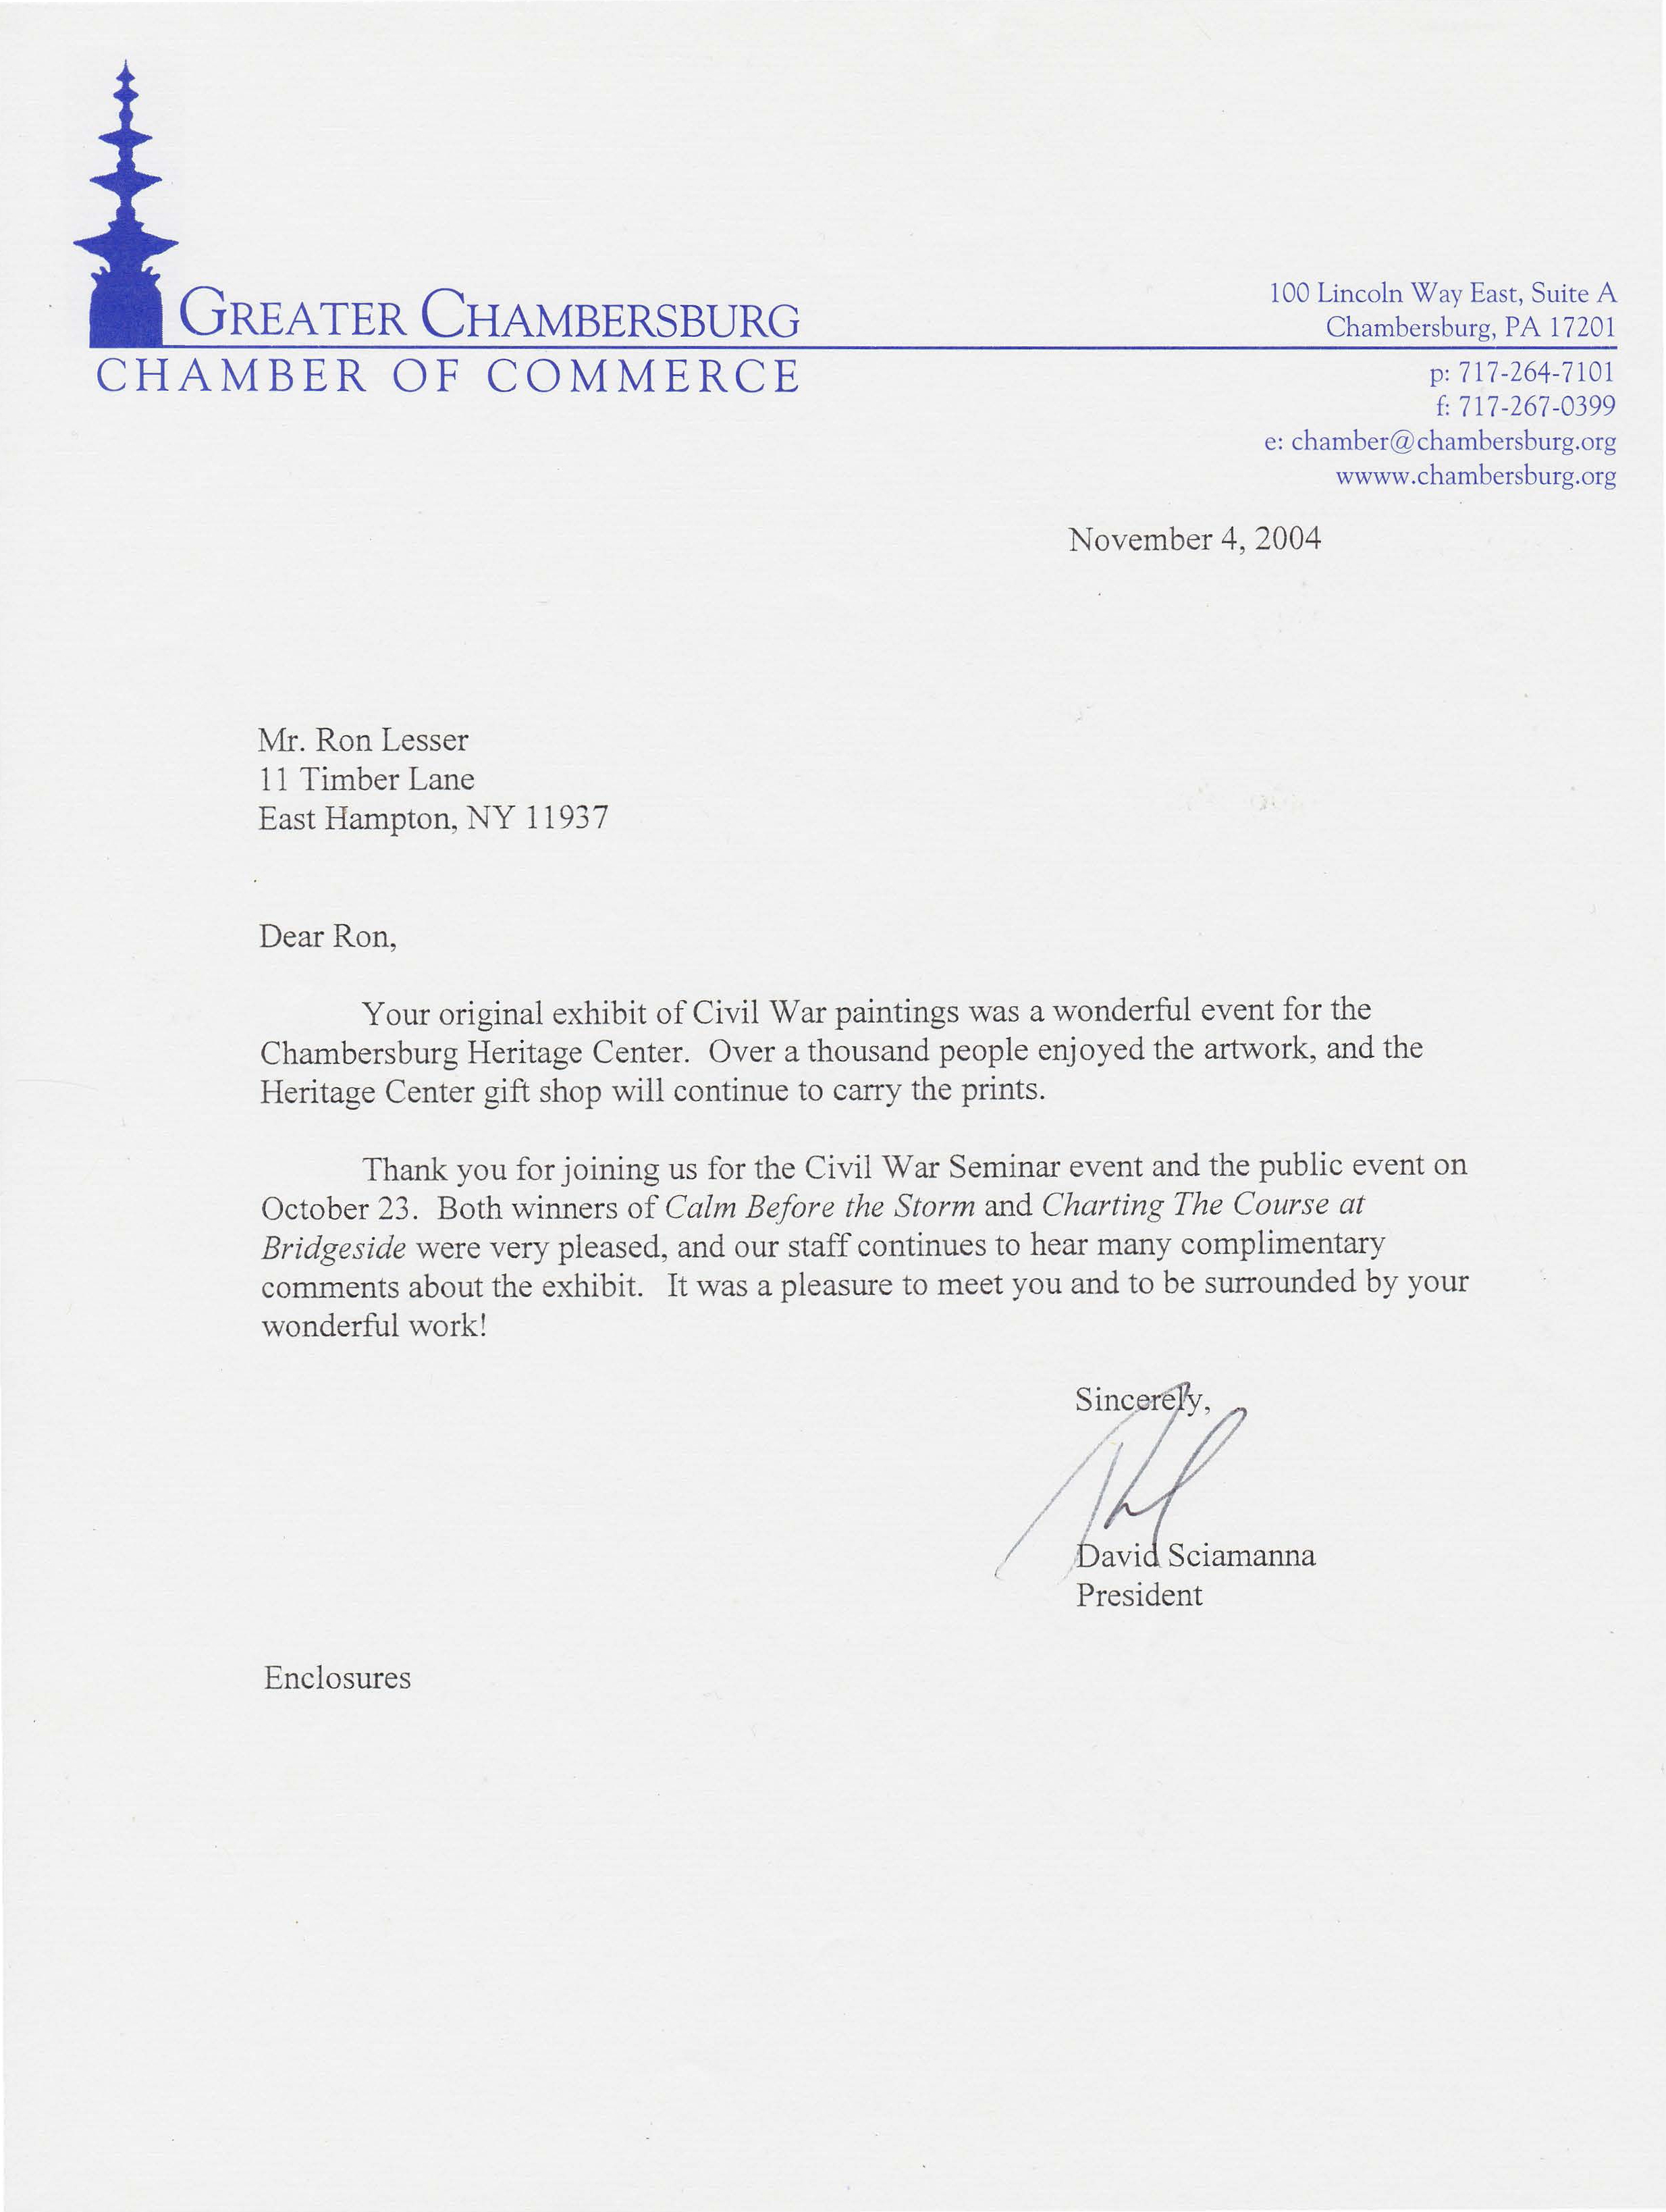 Greater Chambersburg Chamber of Commerce Letter - November 4 2004